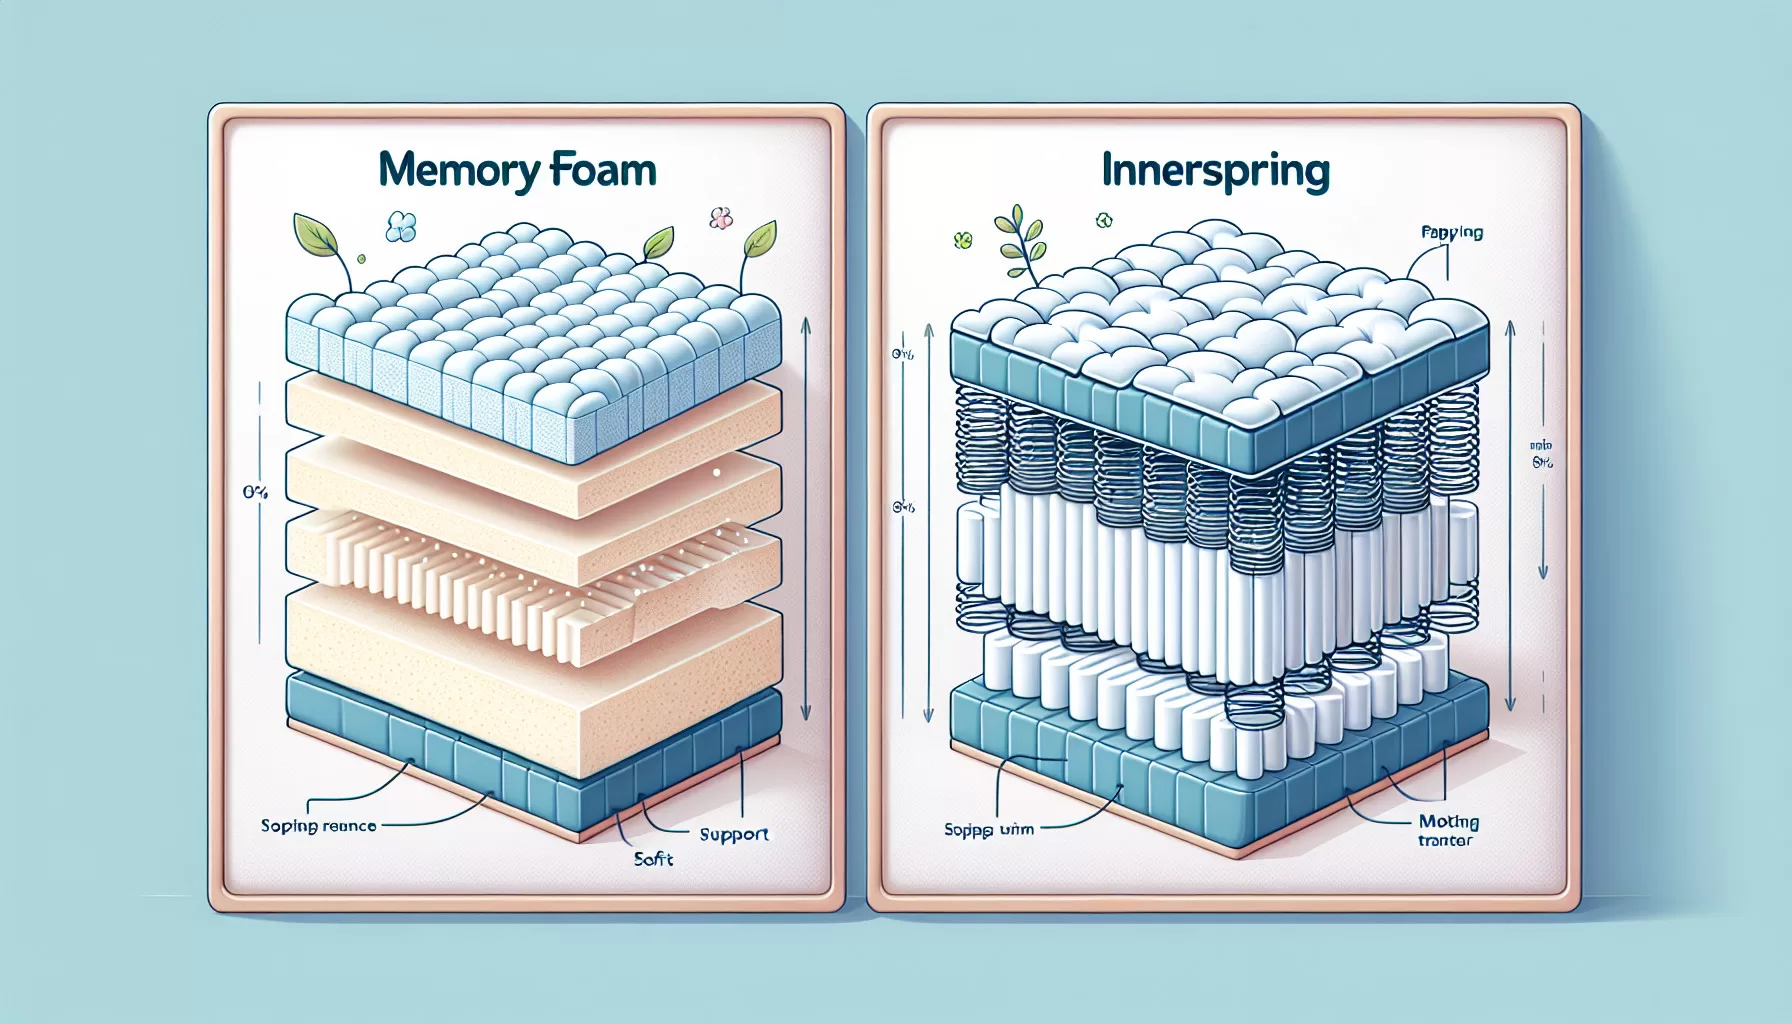 Memory Foam Vs. Innerspring: Which Is Better For Sleep?